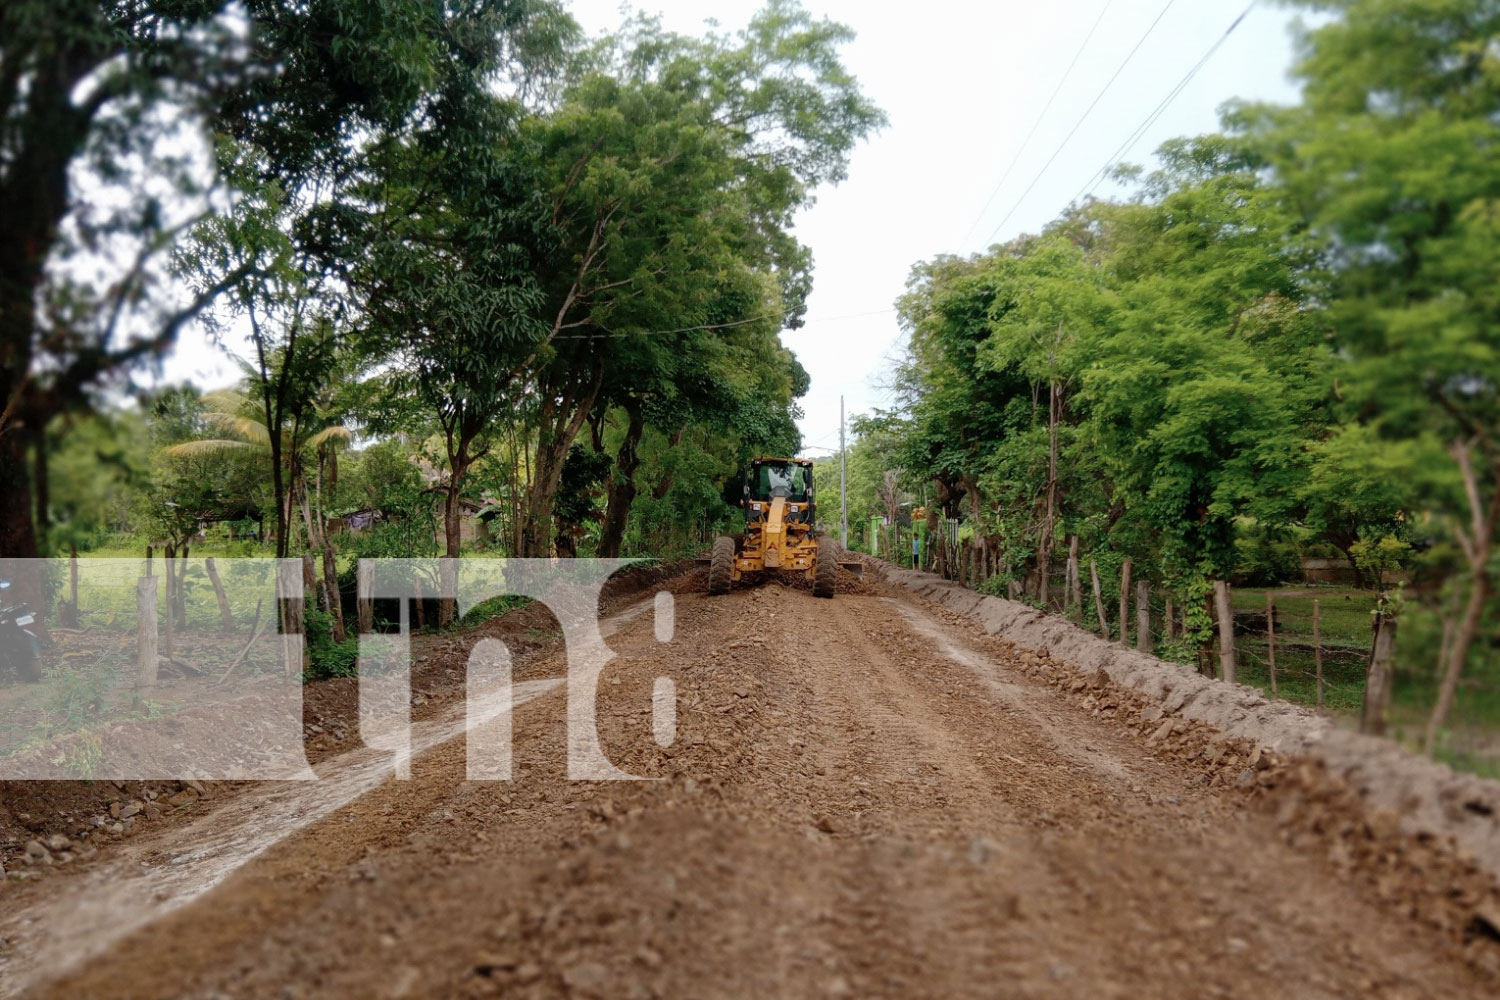 Caminos rurales en Rivas reciben mejoras significativas